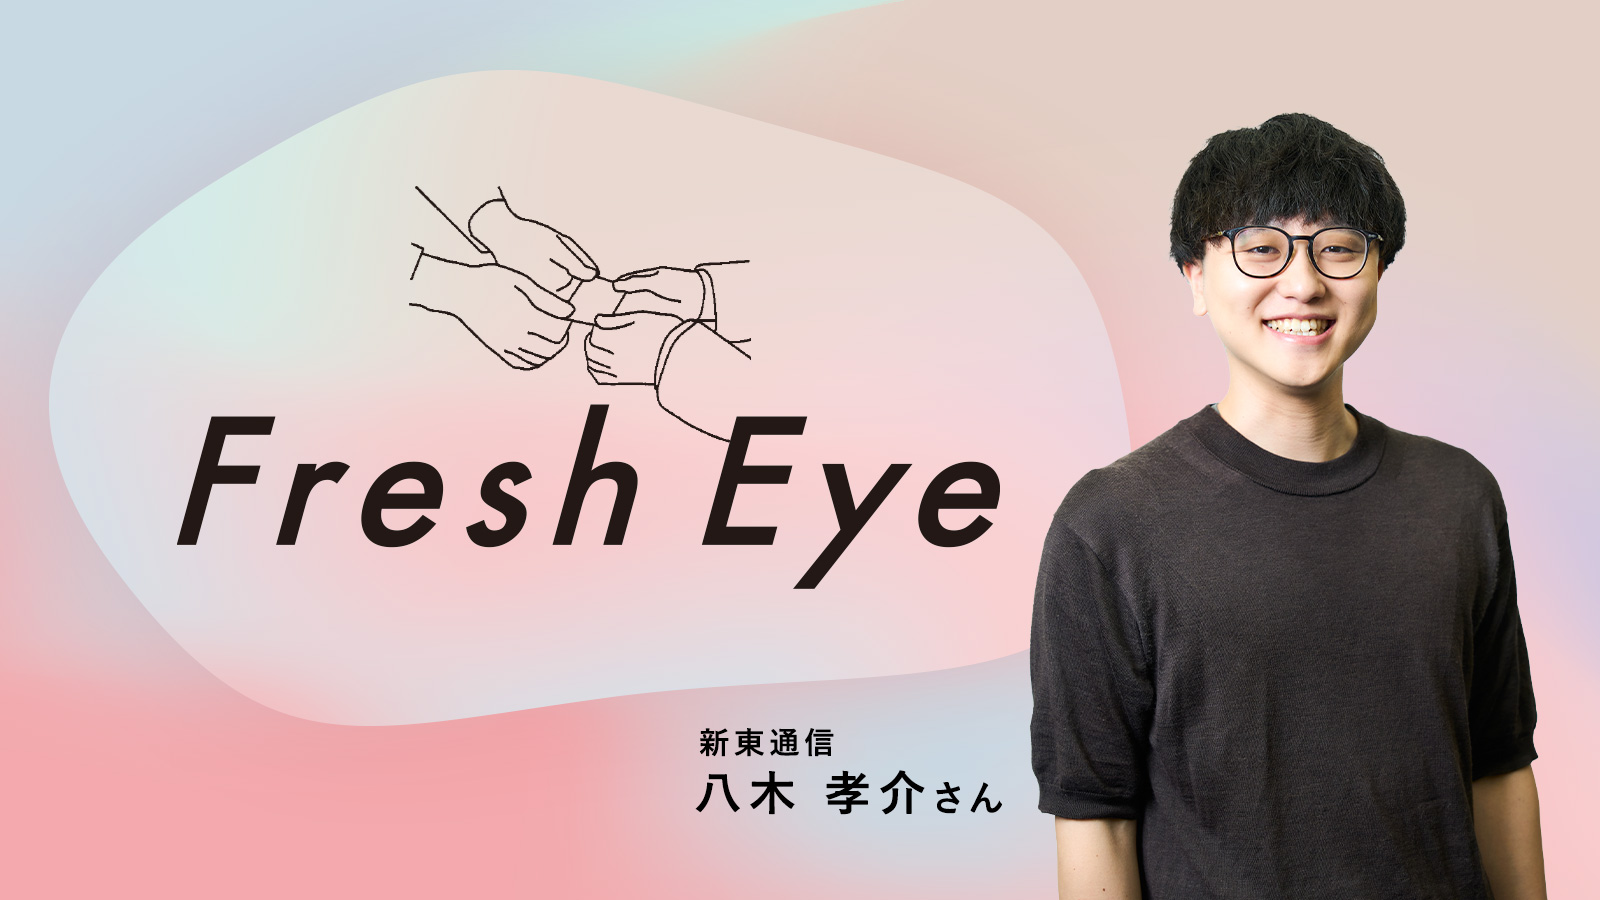 「人を動かす」という難問に向き合う／新東通信 八木孝介さん〈Fresh Eye〉